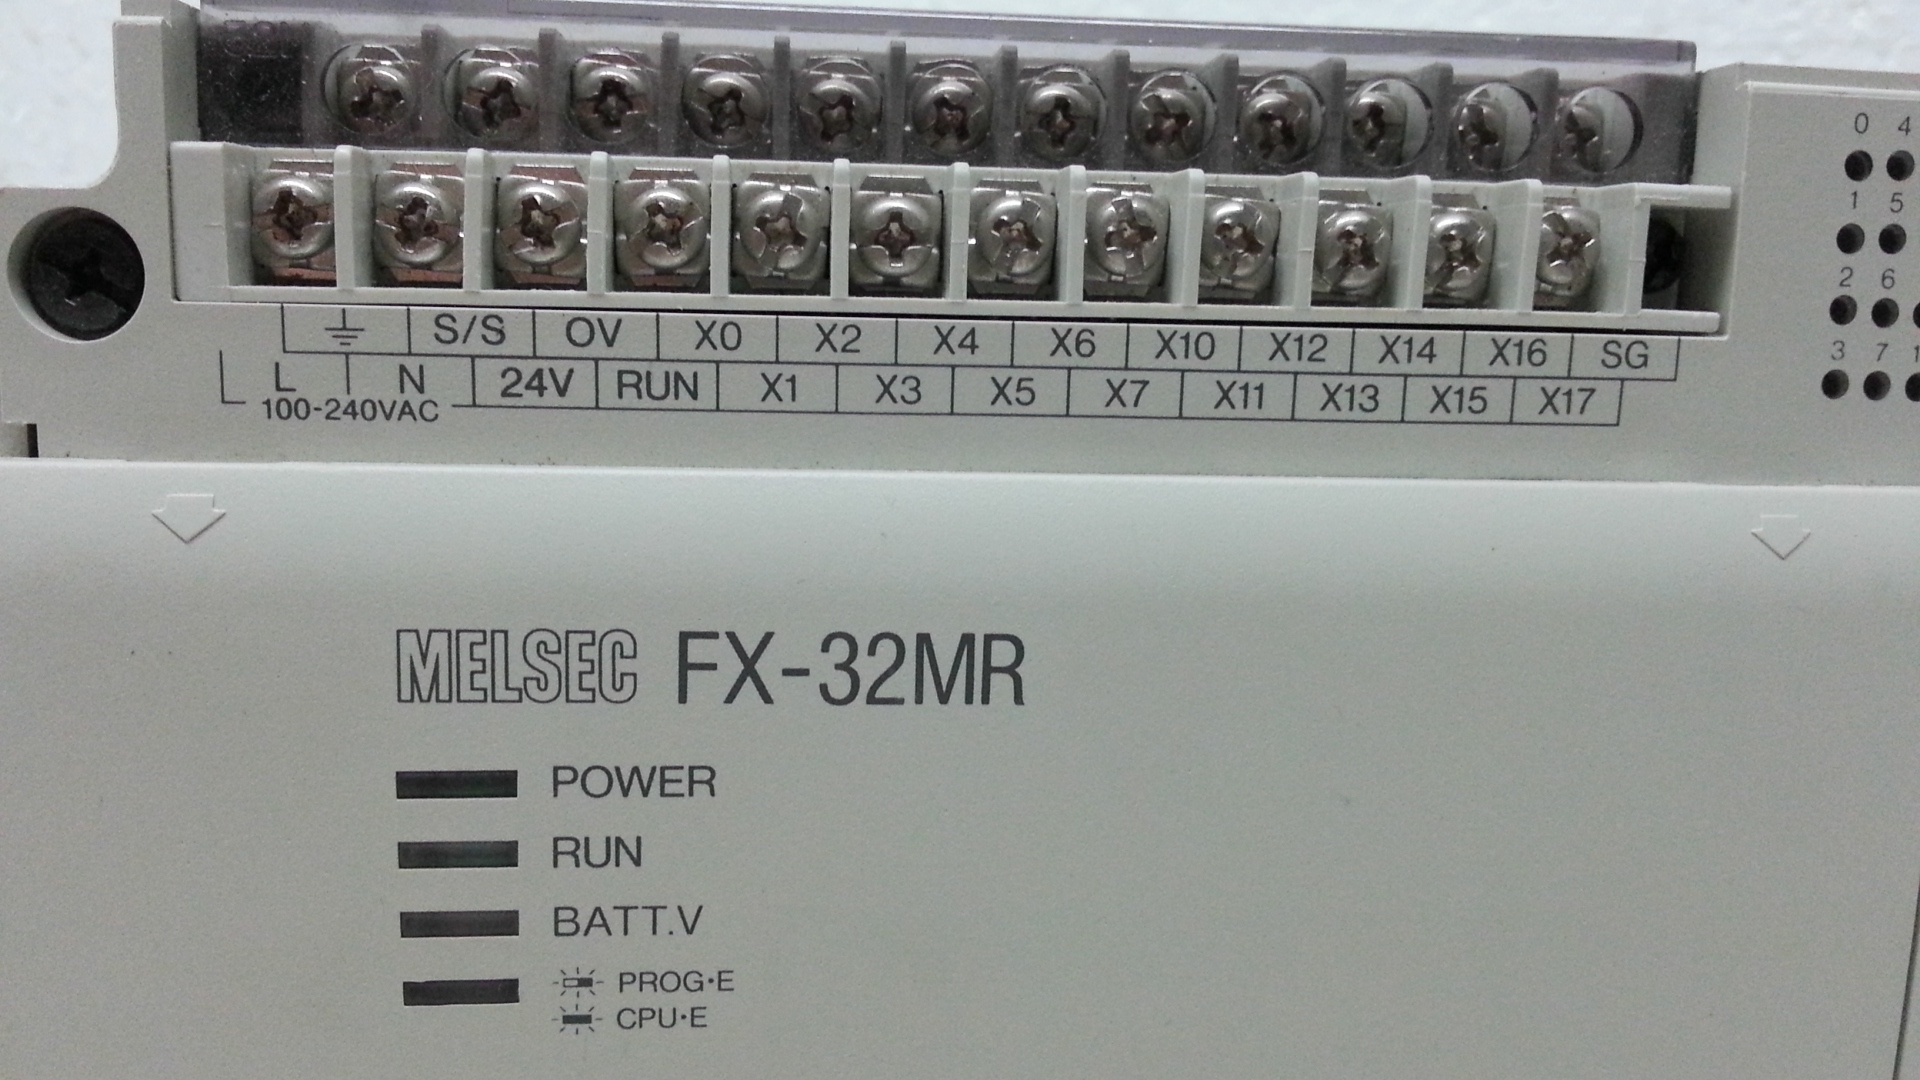 FX32MR melsec PLC Unit.